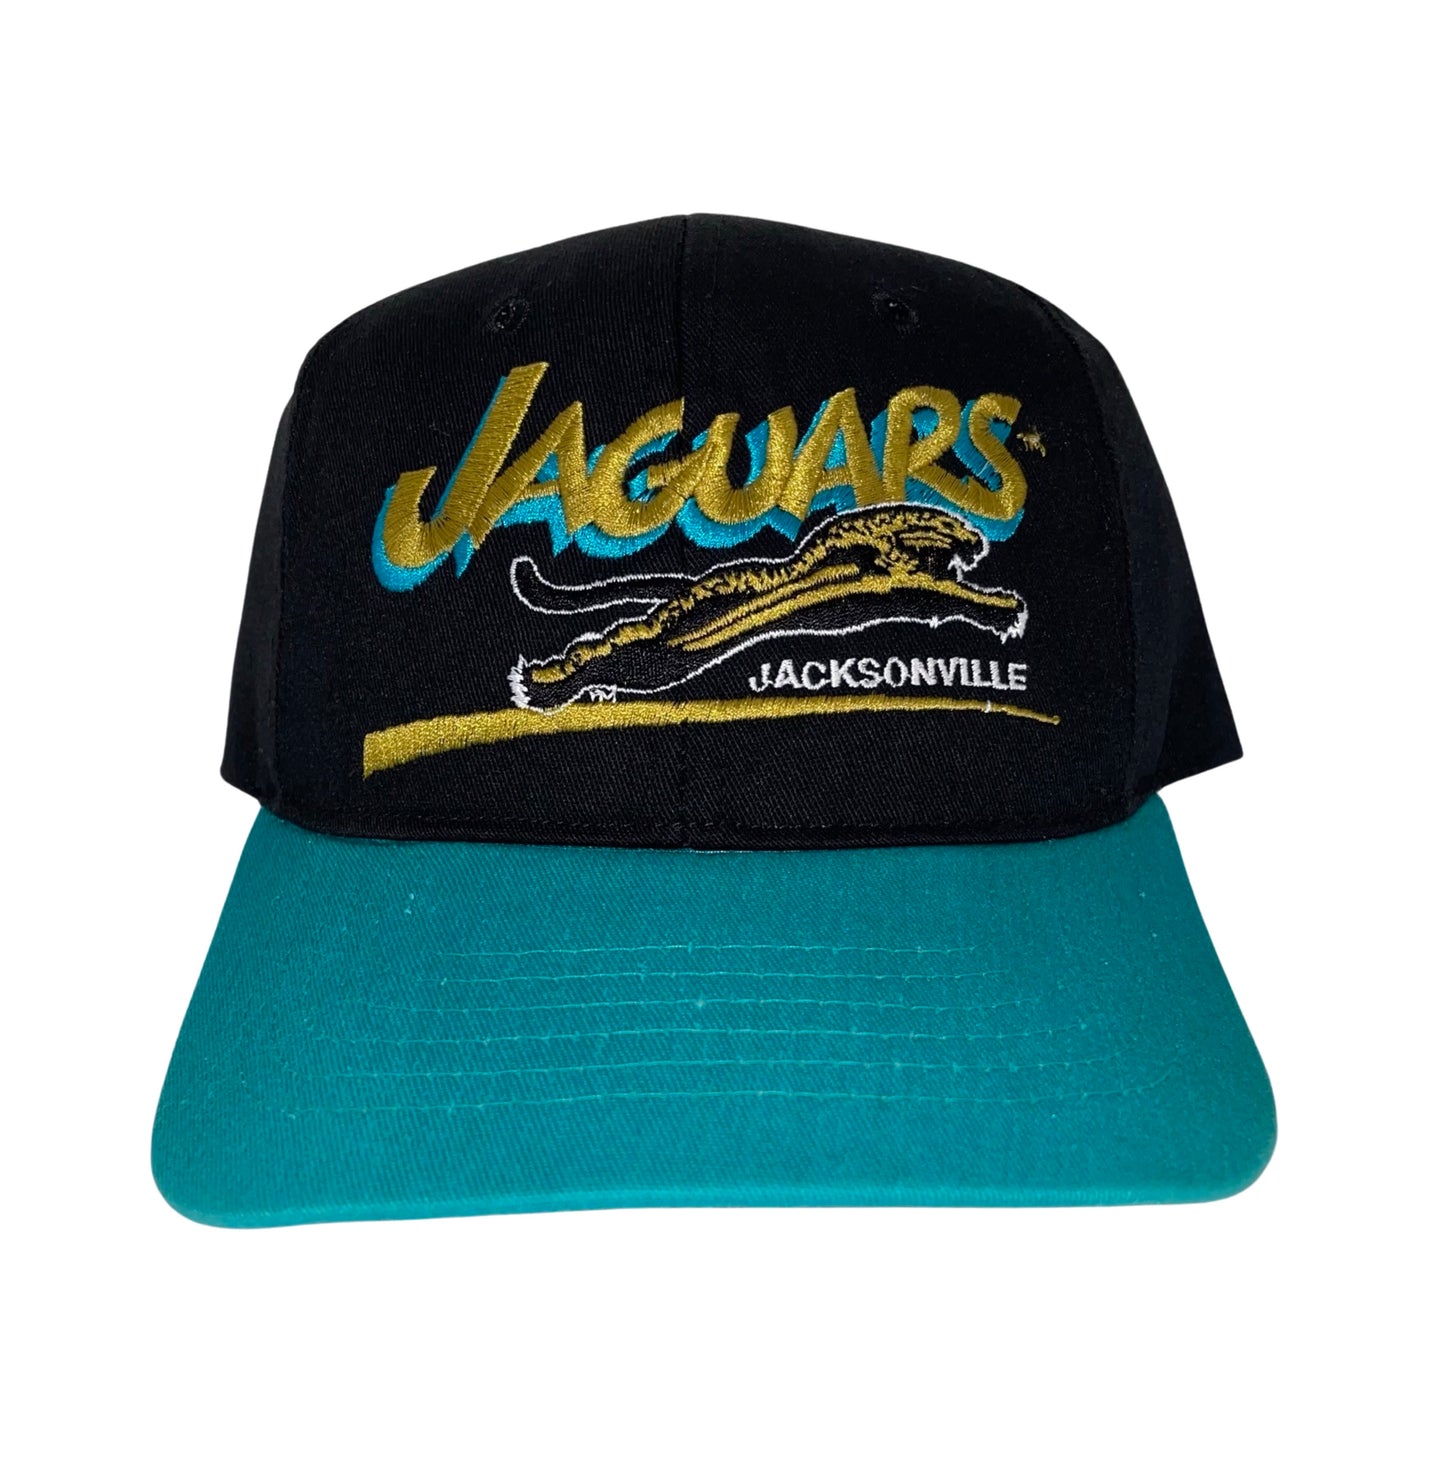 Vintage Jacksonville Jaguars banned logo hat